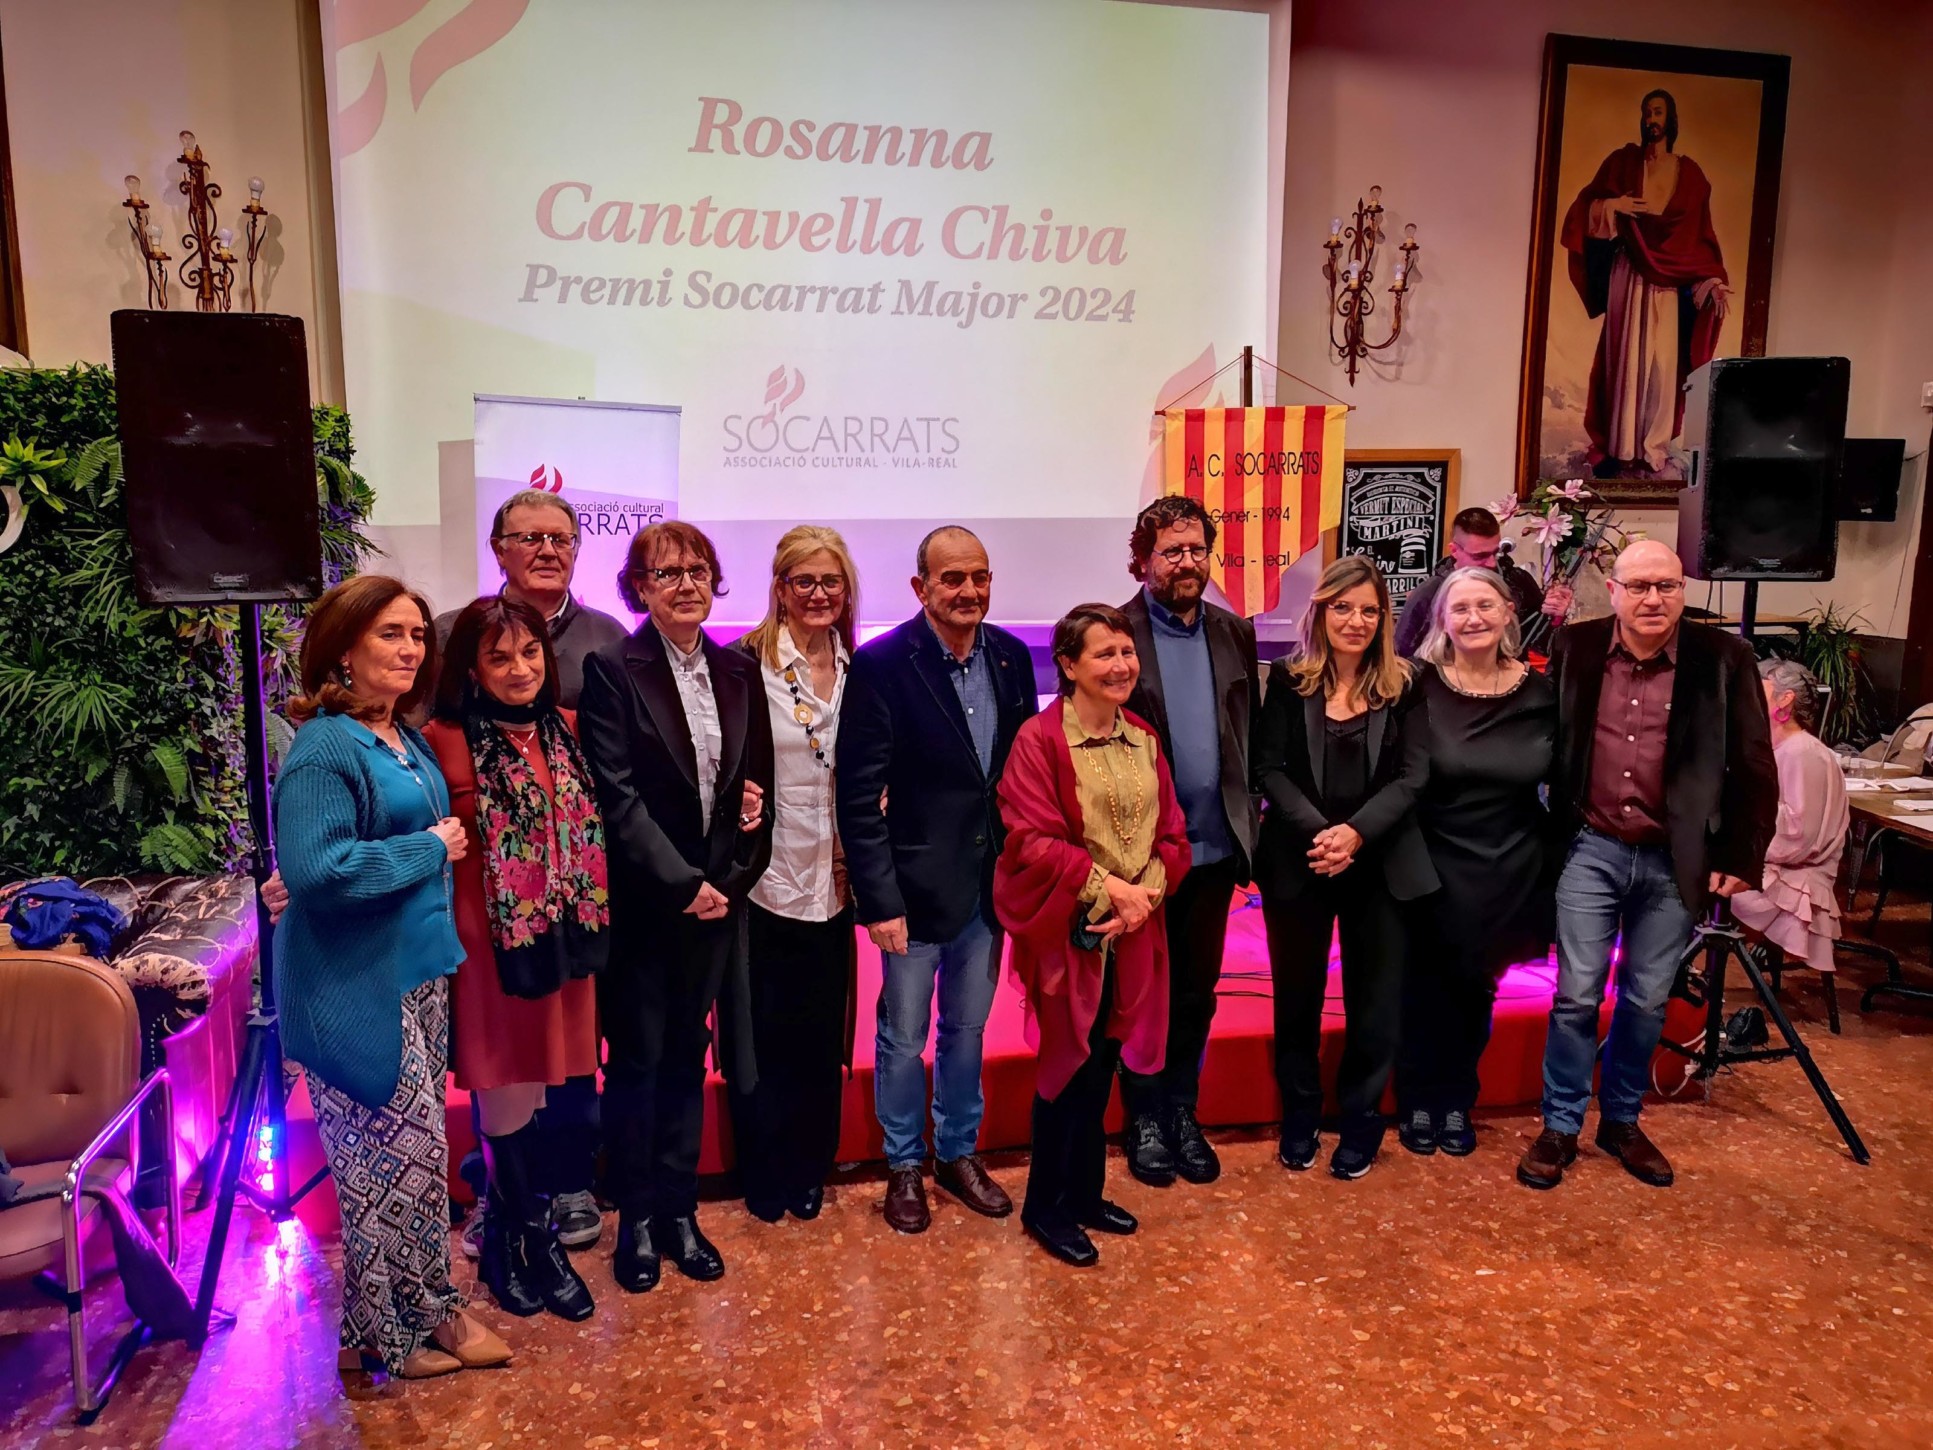 Crònica de l’homenatge a Rosanna Cantavella, Socarrada Major 2024